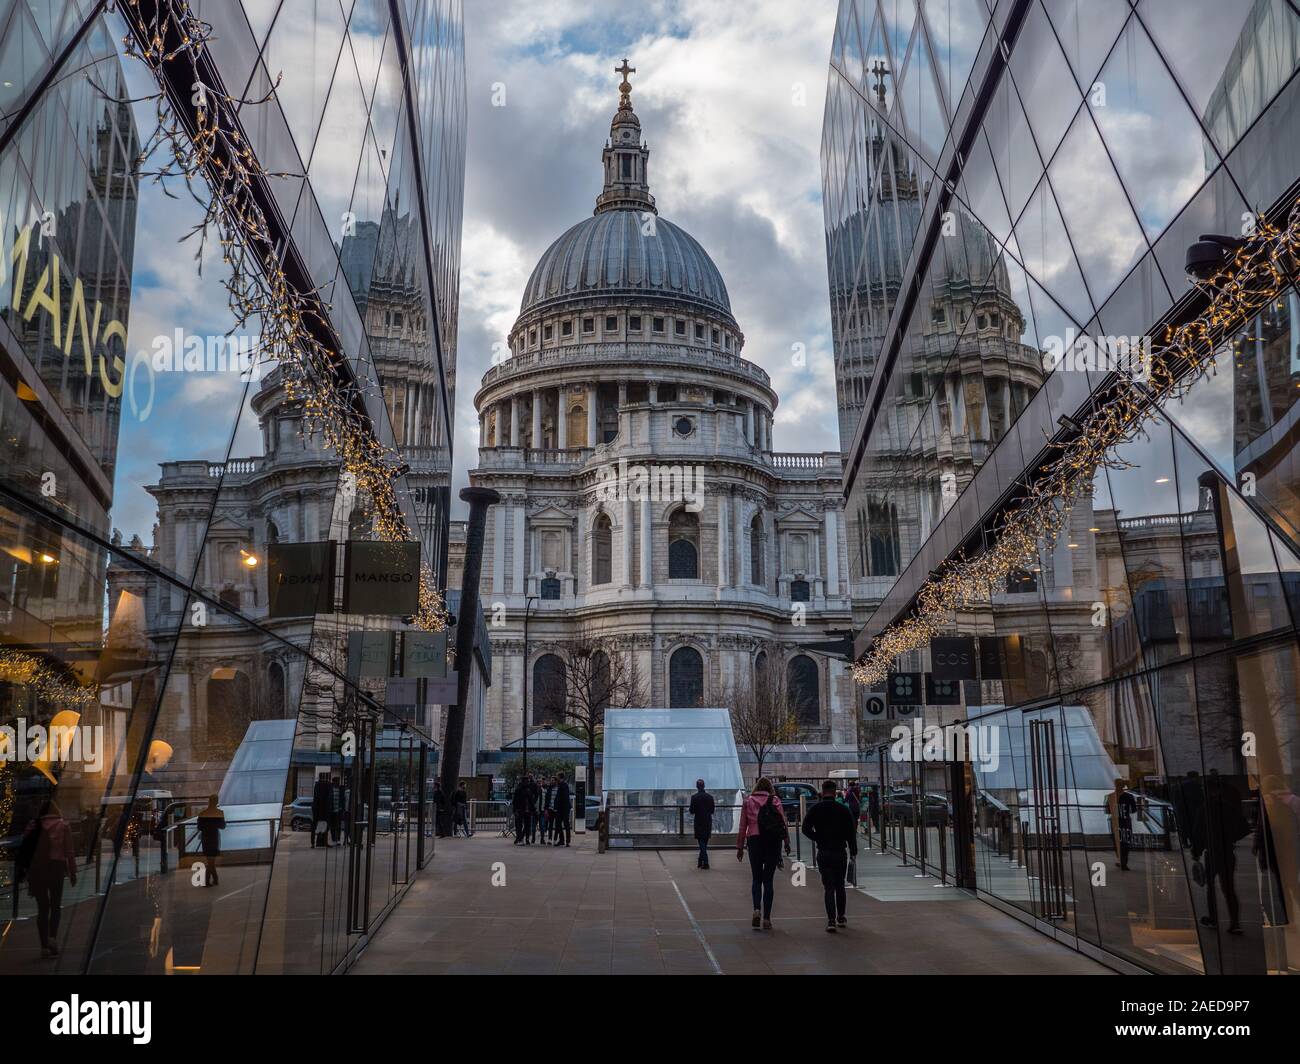 La Catedral de San Pablo, reflejada en el vidrio de un nuevo cambio, centro de compras, Londres, Reino Unido, GB. Foto de stock